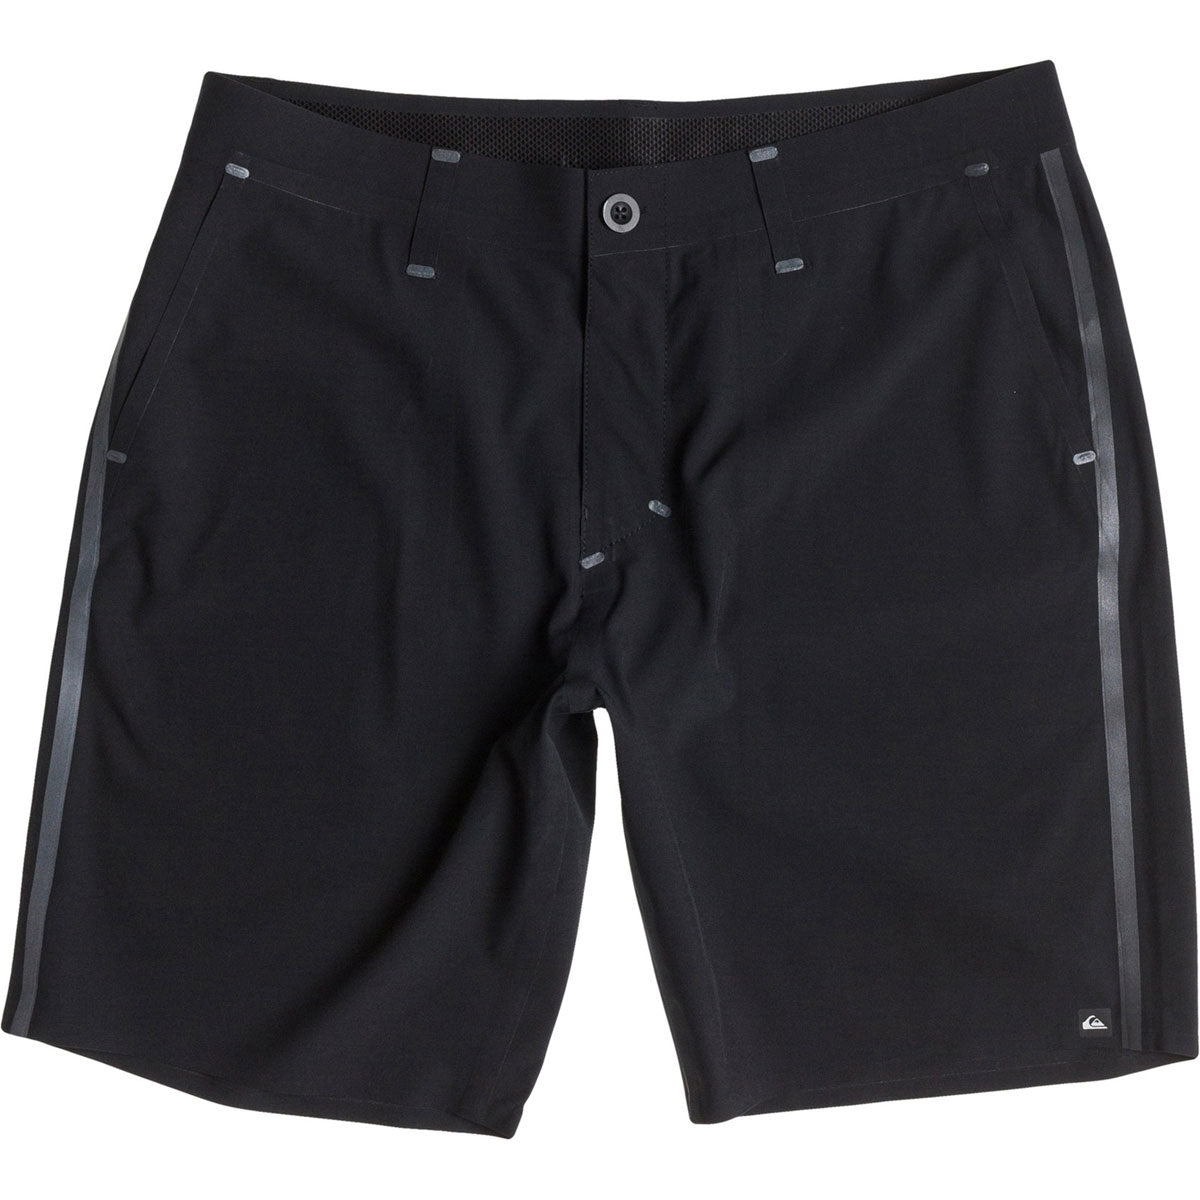 Quiksilver Ag47 Amph Bonded Men's Walkshort Shorts - Black